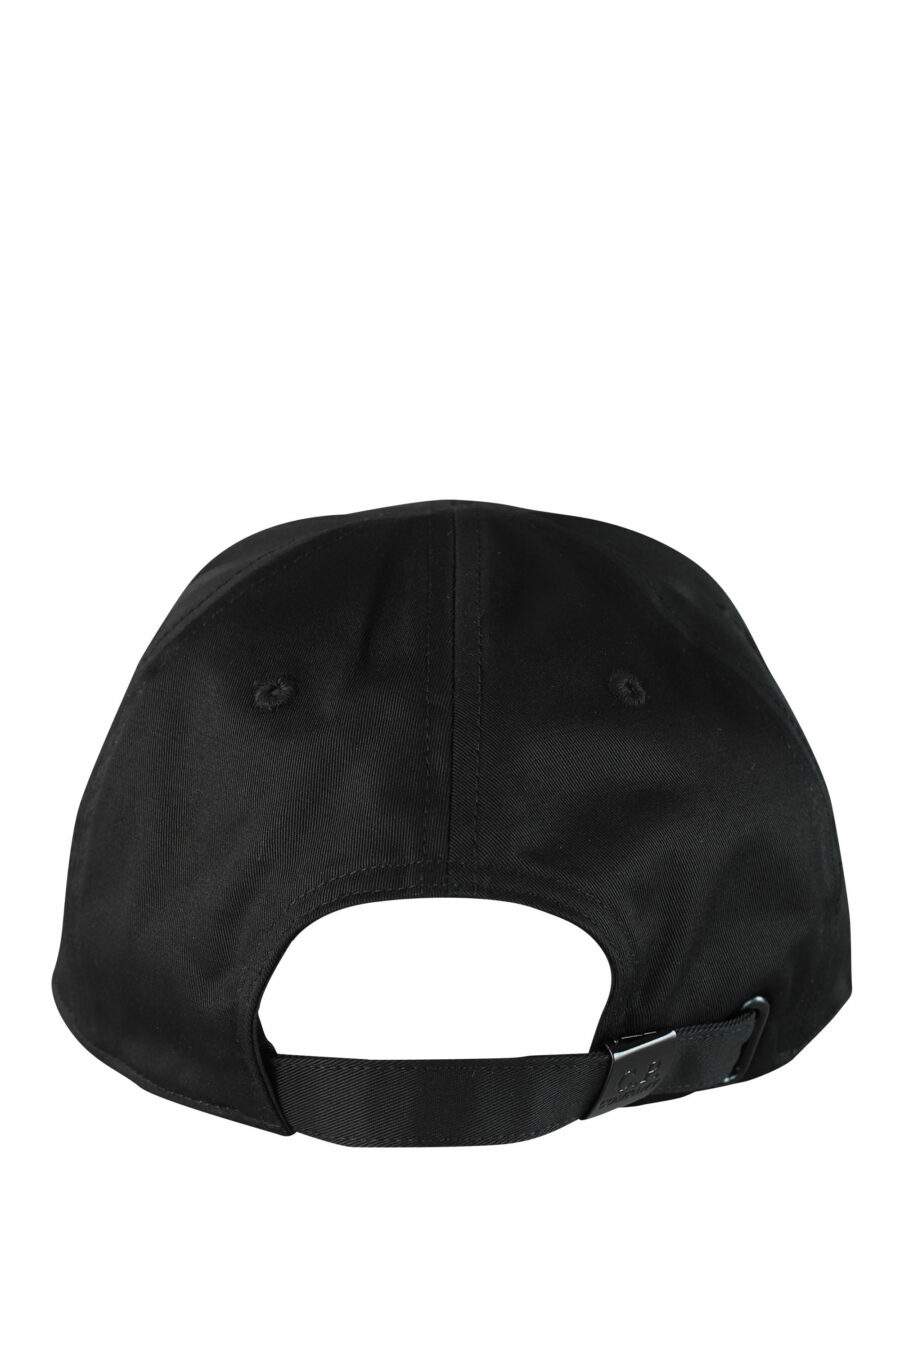 Gorra negra con logotipo - IMG 1533